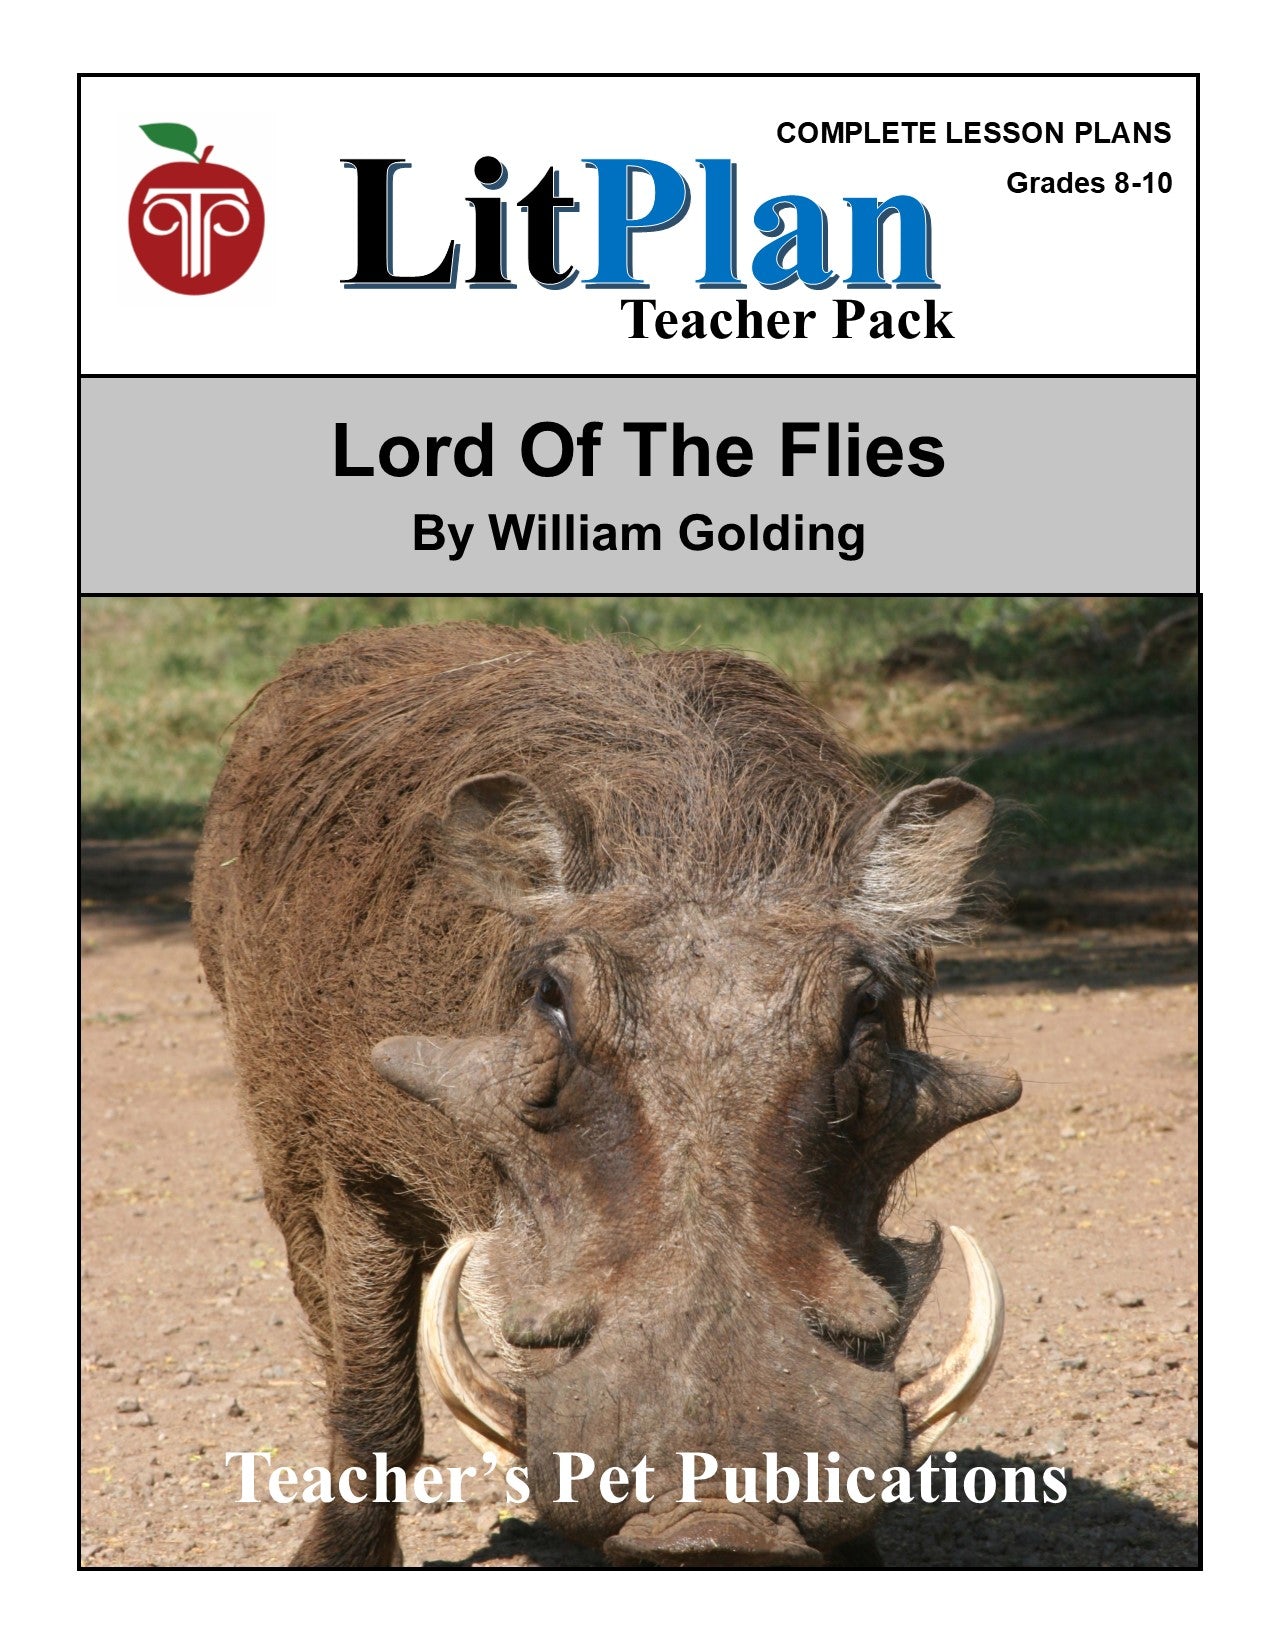 Lord of the Flies: LitPlan Teacher Pack Grades 8-10